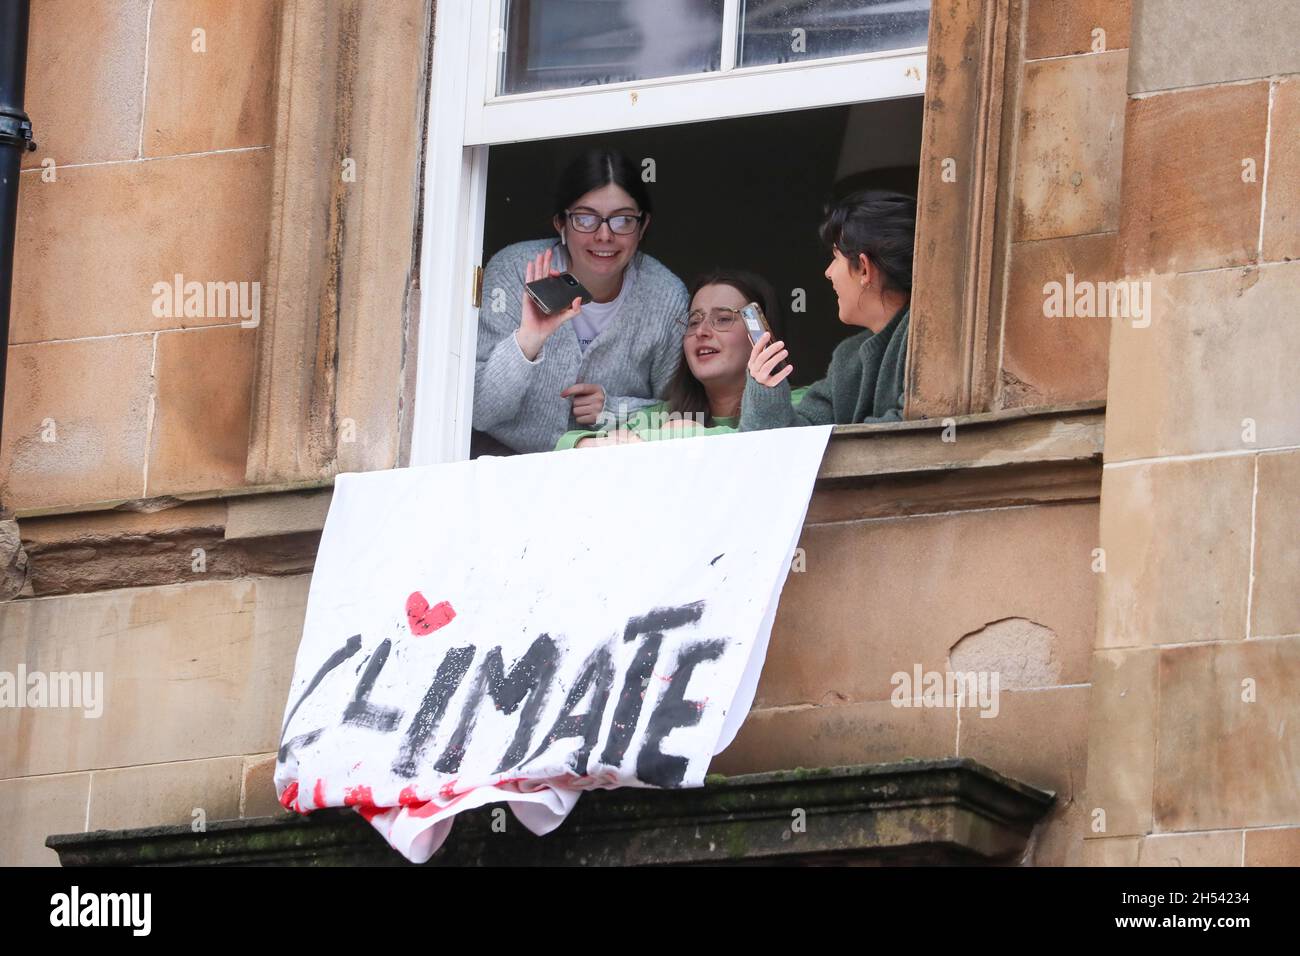 Migliaia di marzo nella Giornata Globale d'azione della Giustizia climatica nel centro di Glasgow in Scozia dove si svolge la Conferenza sul clima COP26 Foto Stock